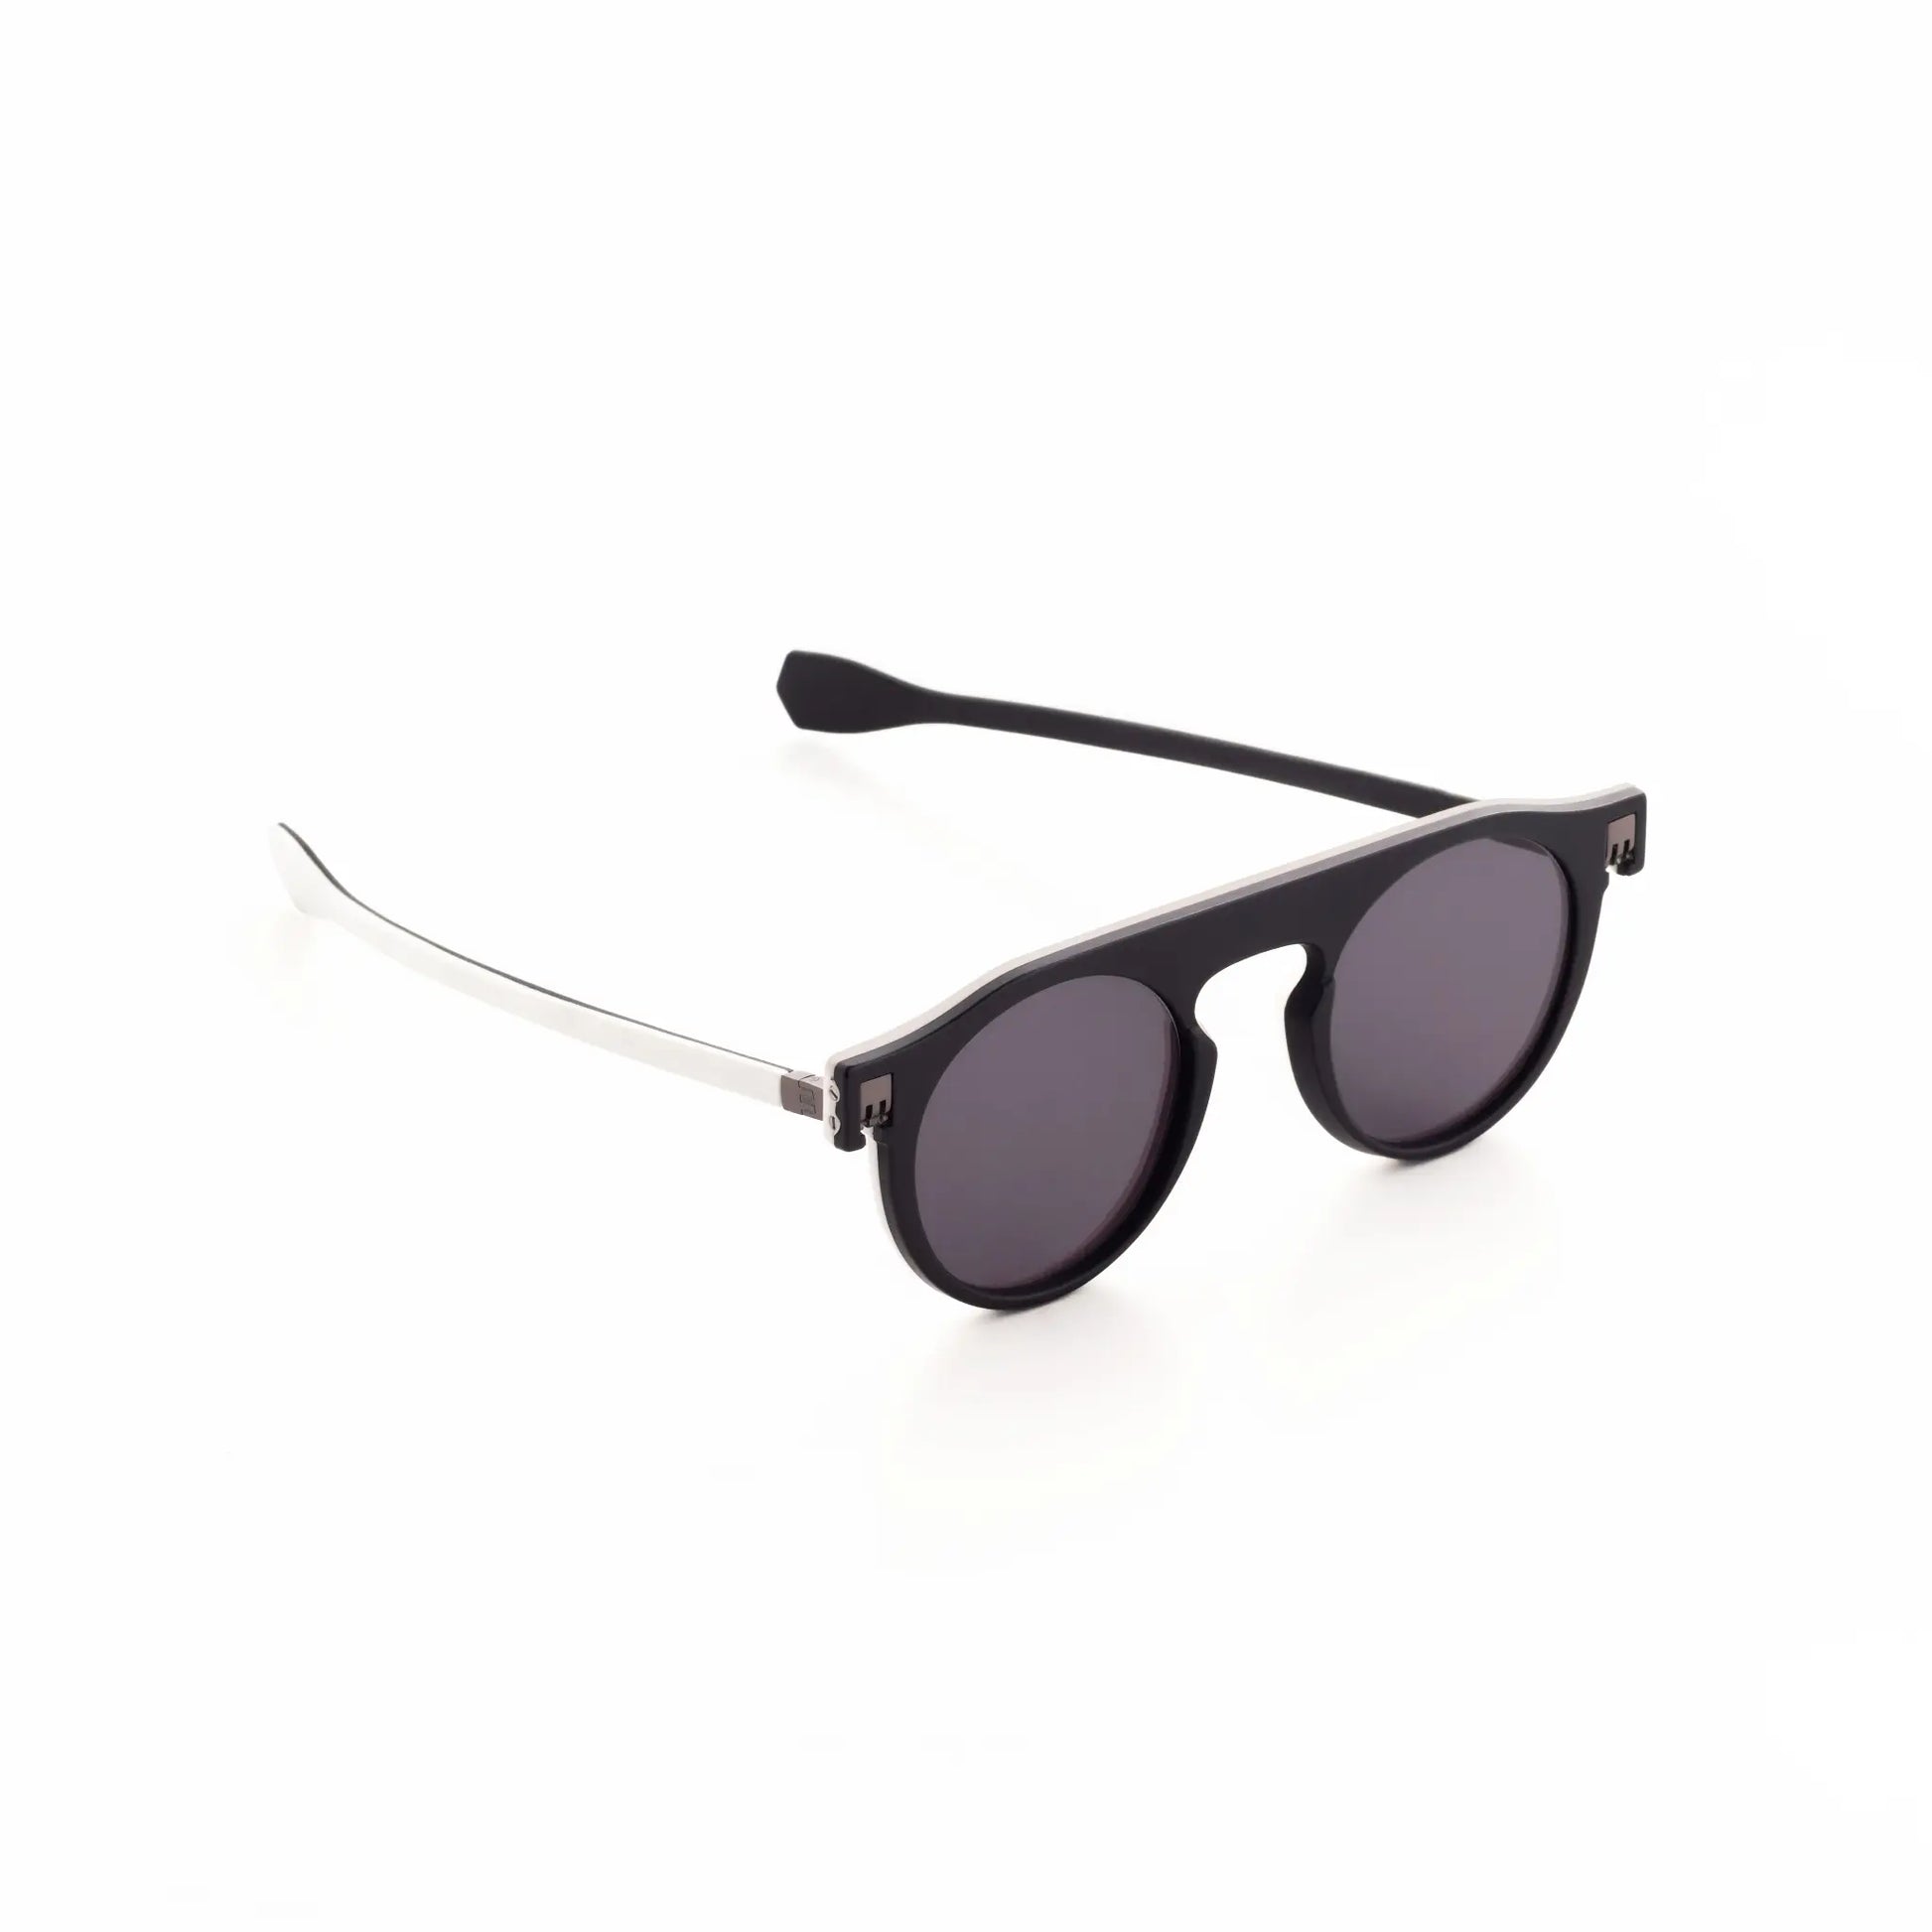 Reverso sunglasses black & white reversible & ultra light side view 2